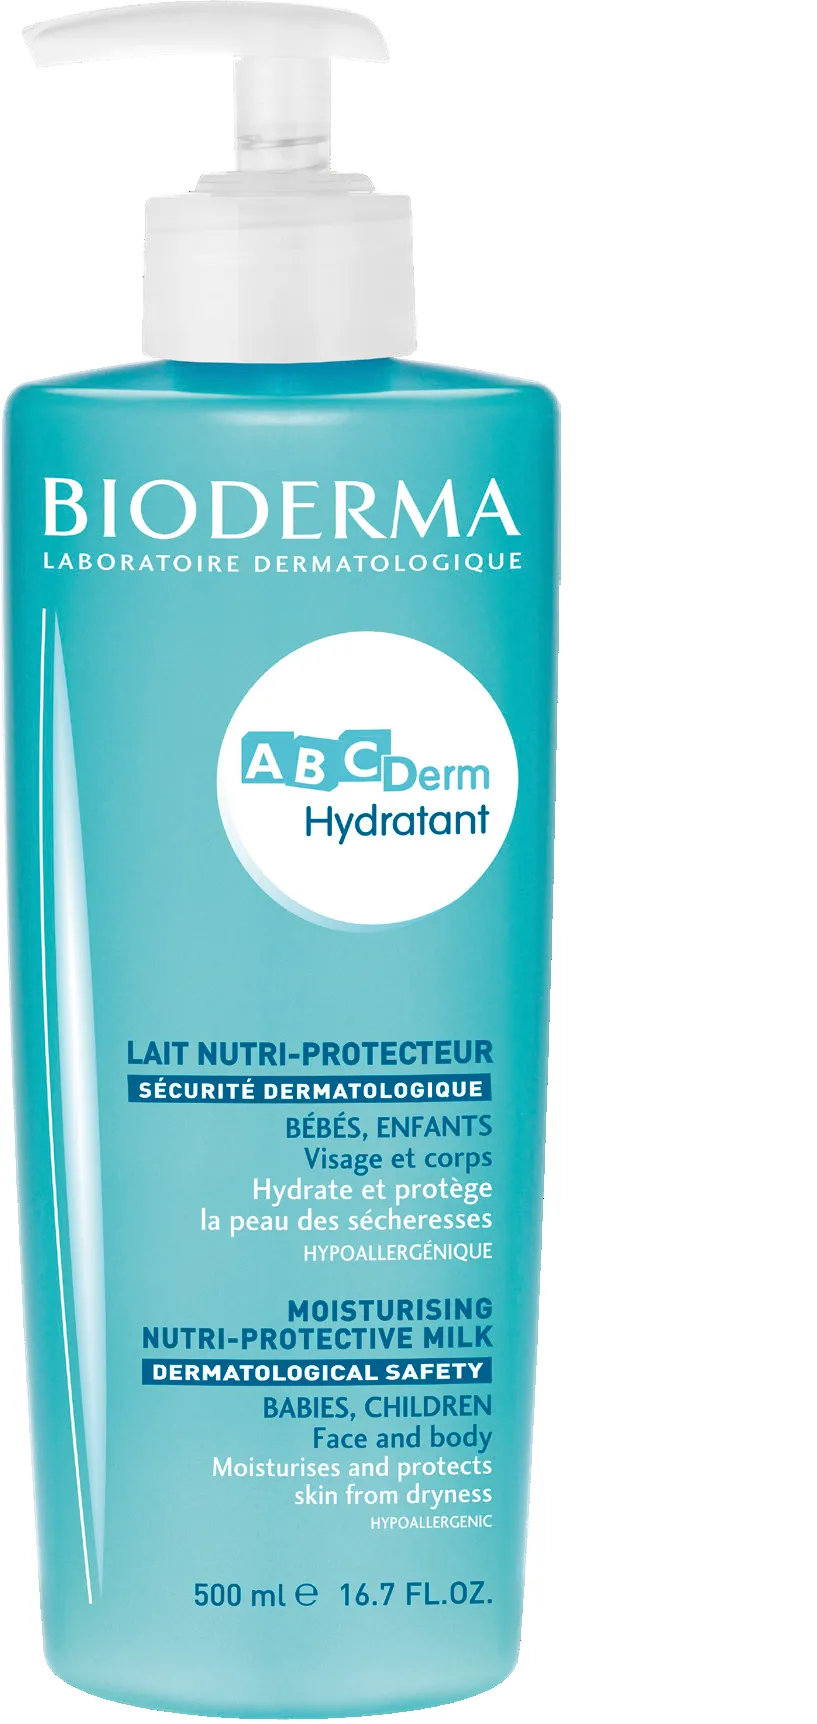 Crema, lotiune si balsam de corp - Bioderma ABC Derm lapte hidratant pentru copii si bebelusi x 500ml, medik-on.ro